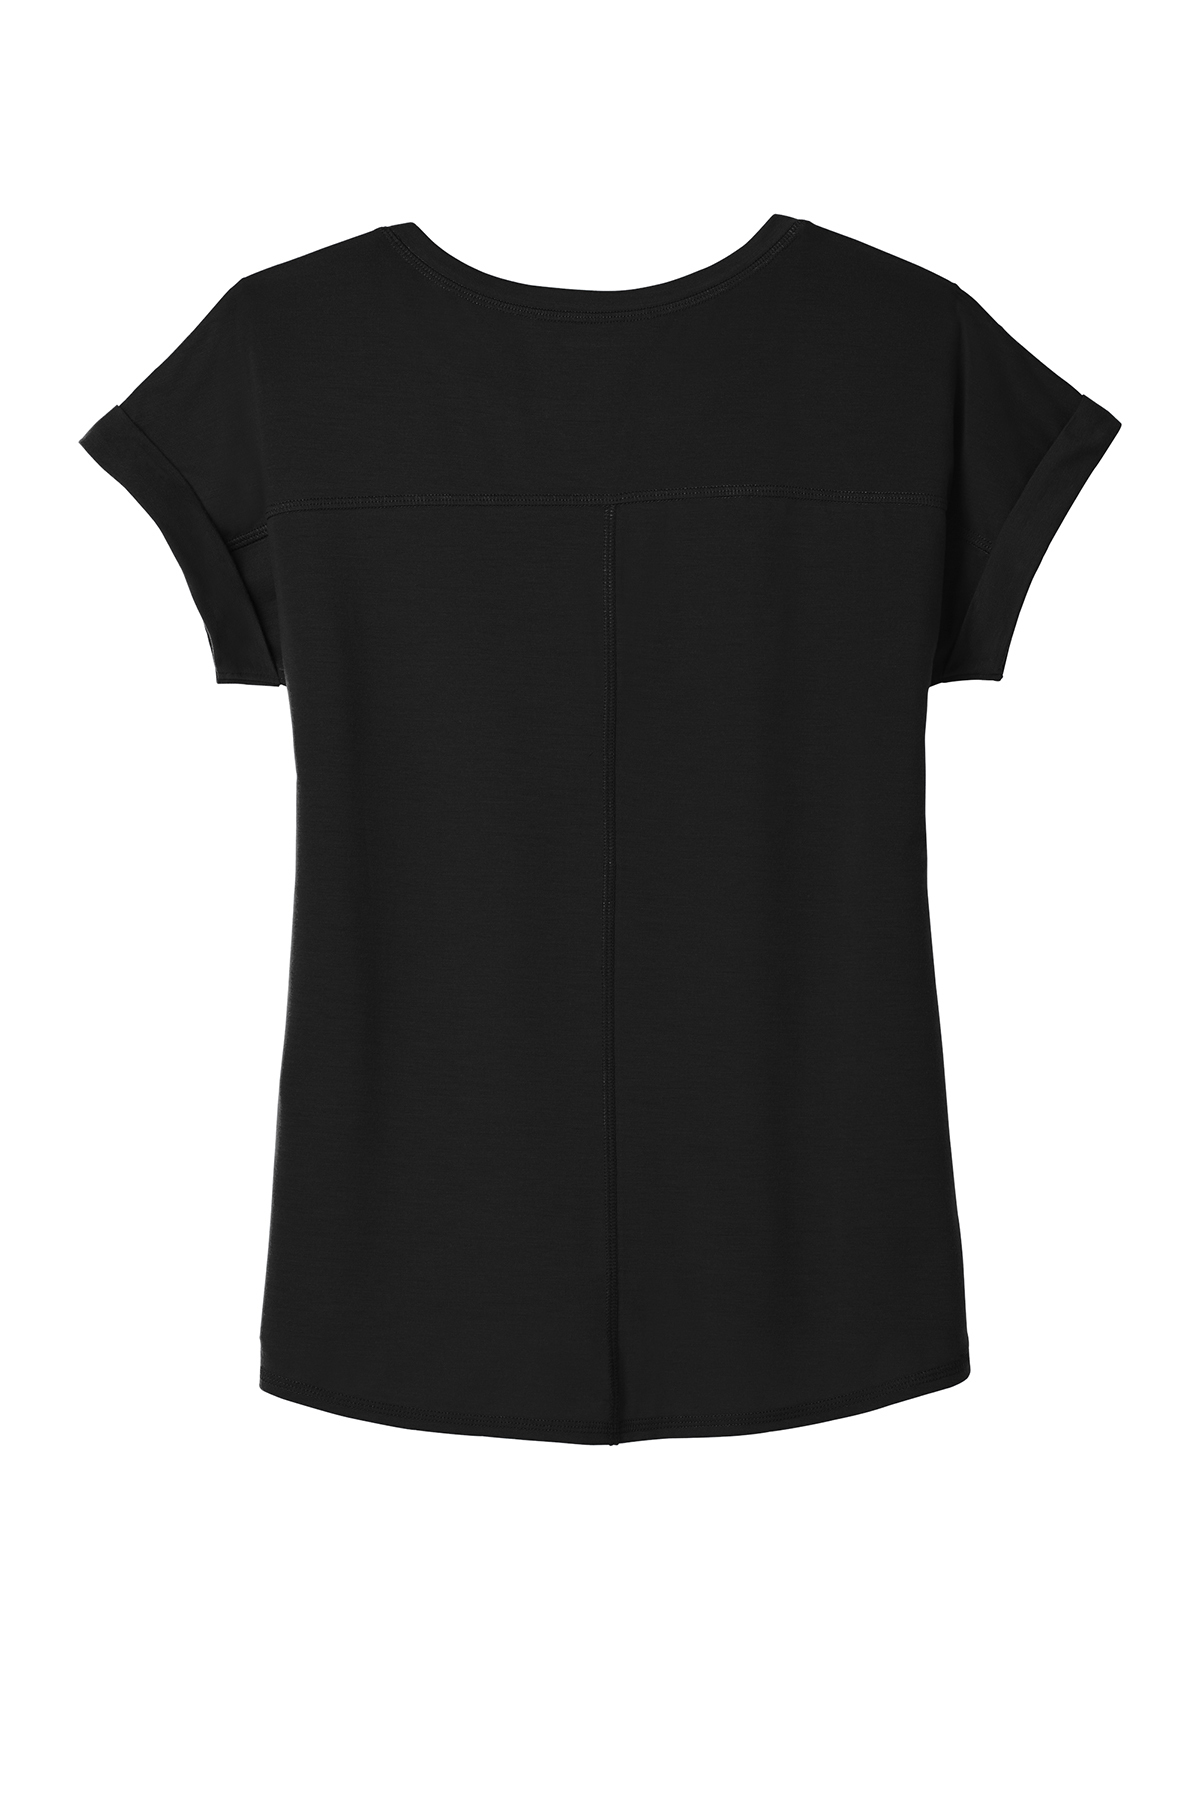 OGIO ® Ladies Luuma Cuffed Short Sleeve LOG800 OGIO ktmart 5